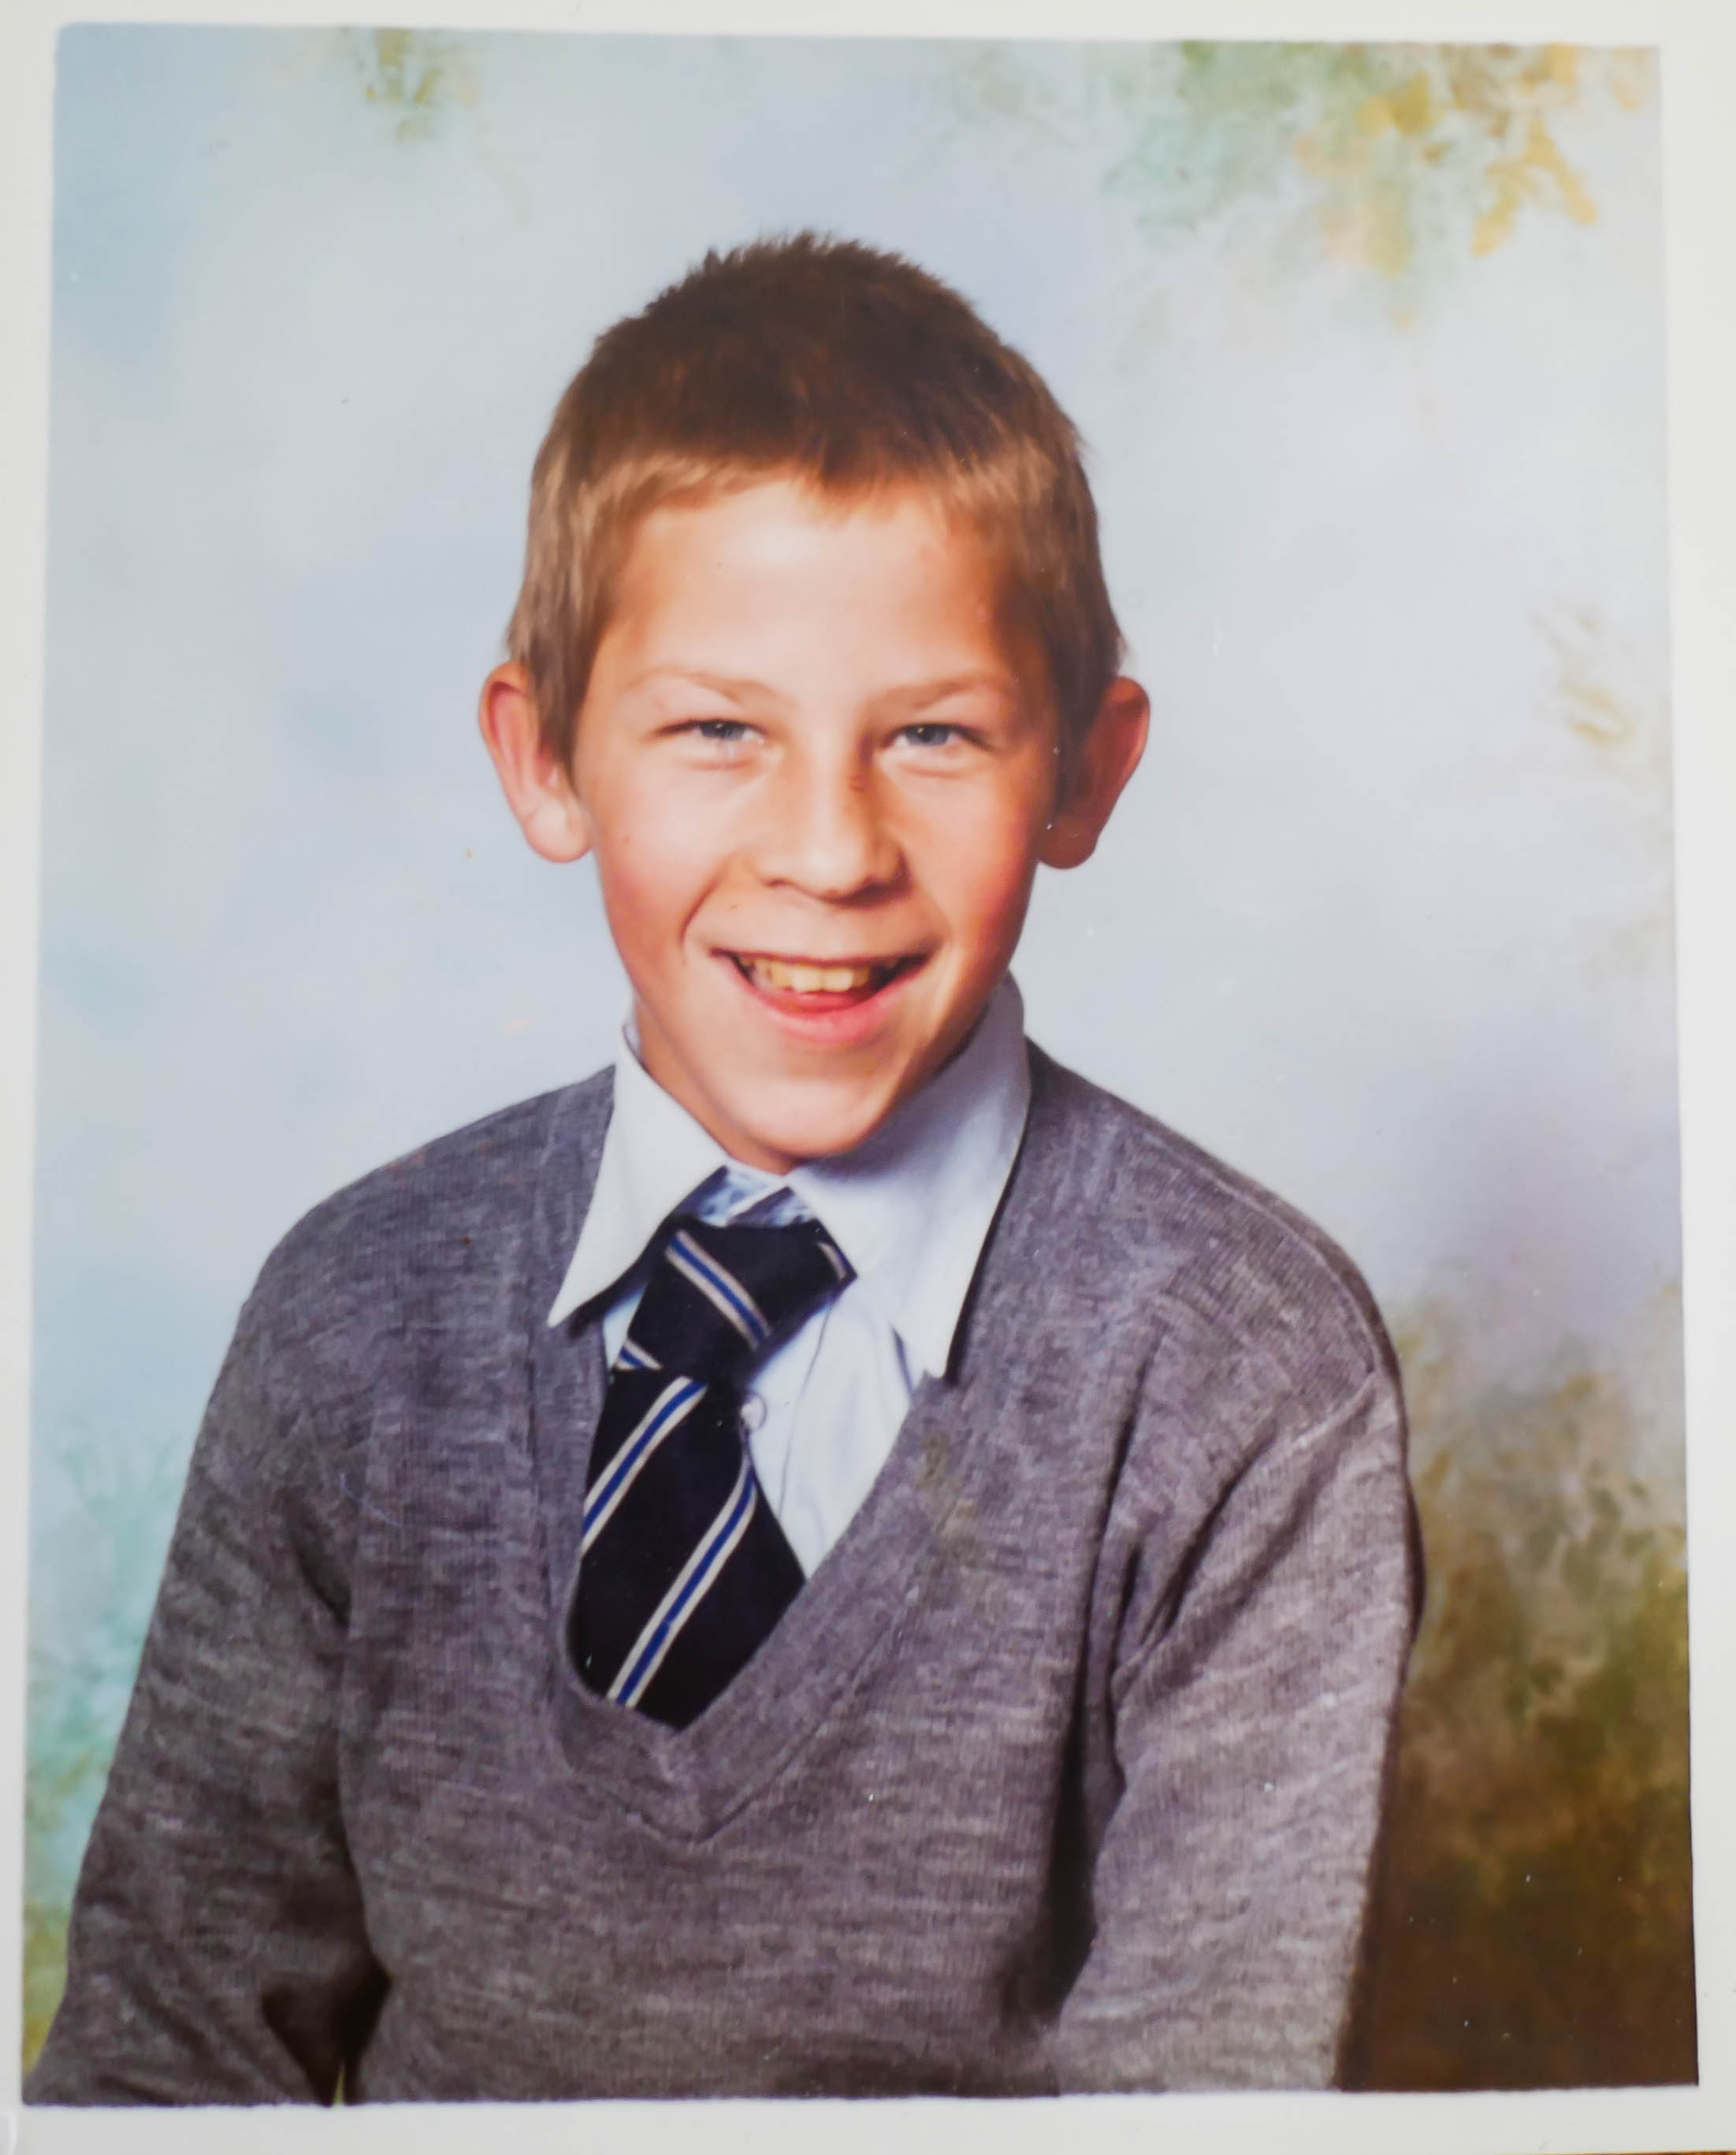 George as a school boy